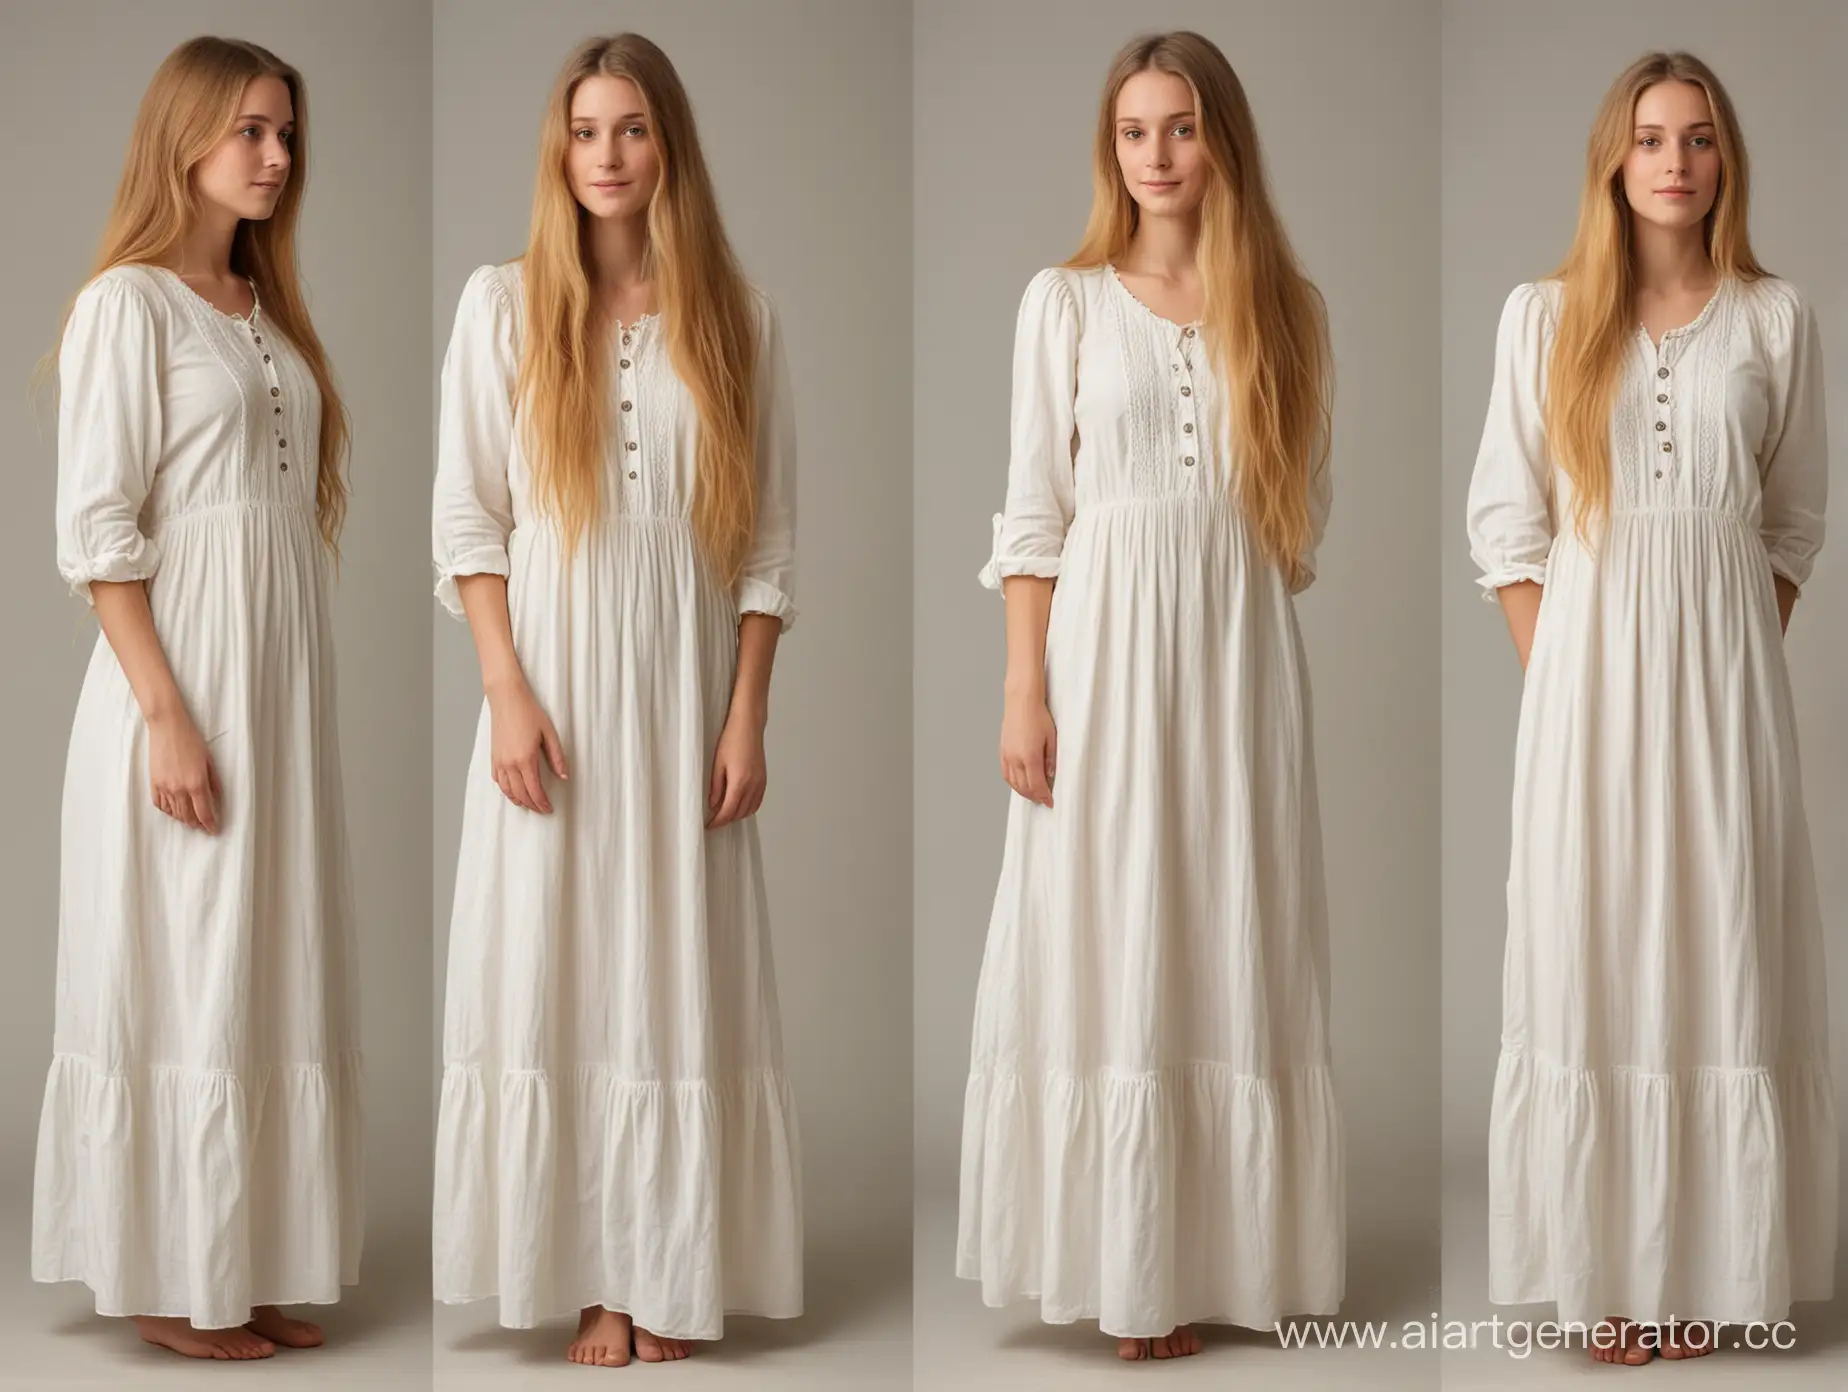 Девушка 27 лет, с длинными золотистыми волосами, спокойная, одетая в легкое домашнее светлое платье без лишних украшний, конца 19 века, вид с трех ракурсов, в полный рост